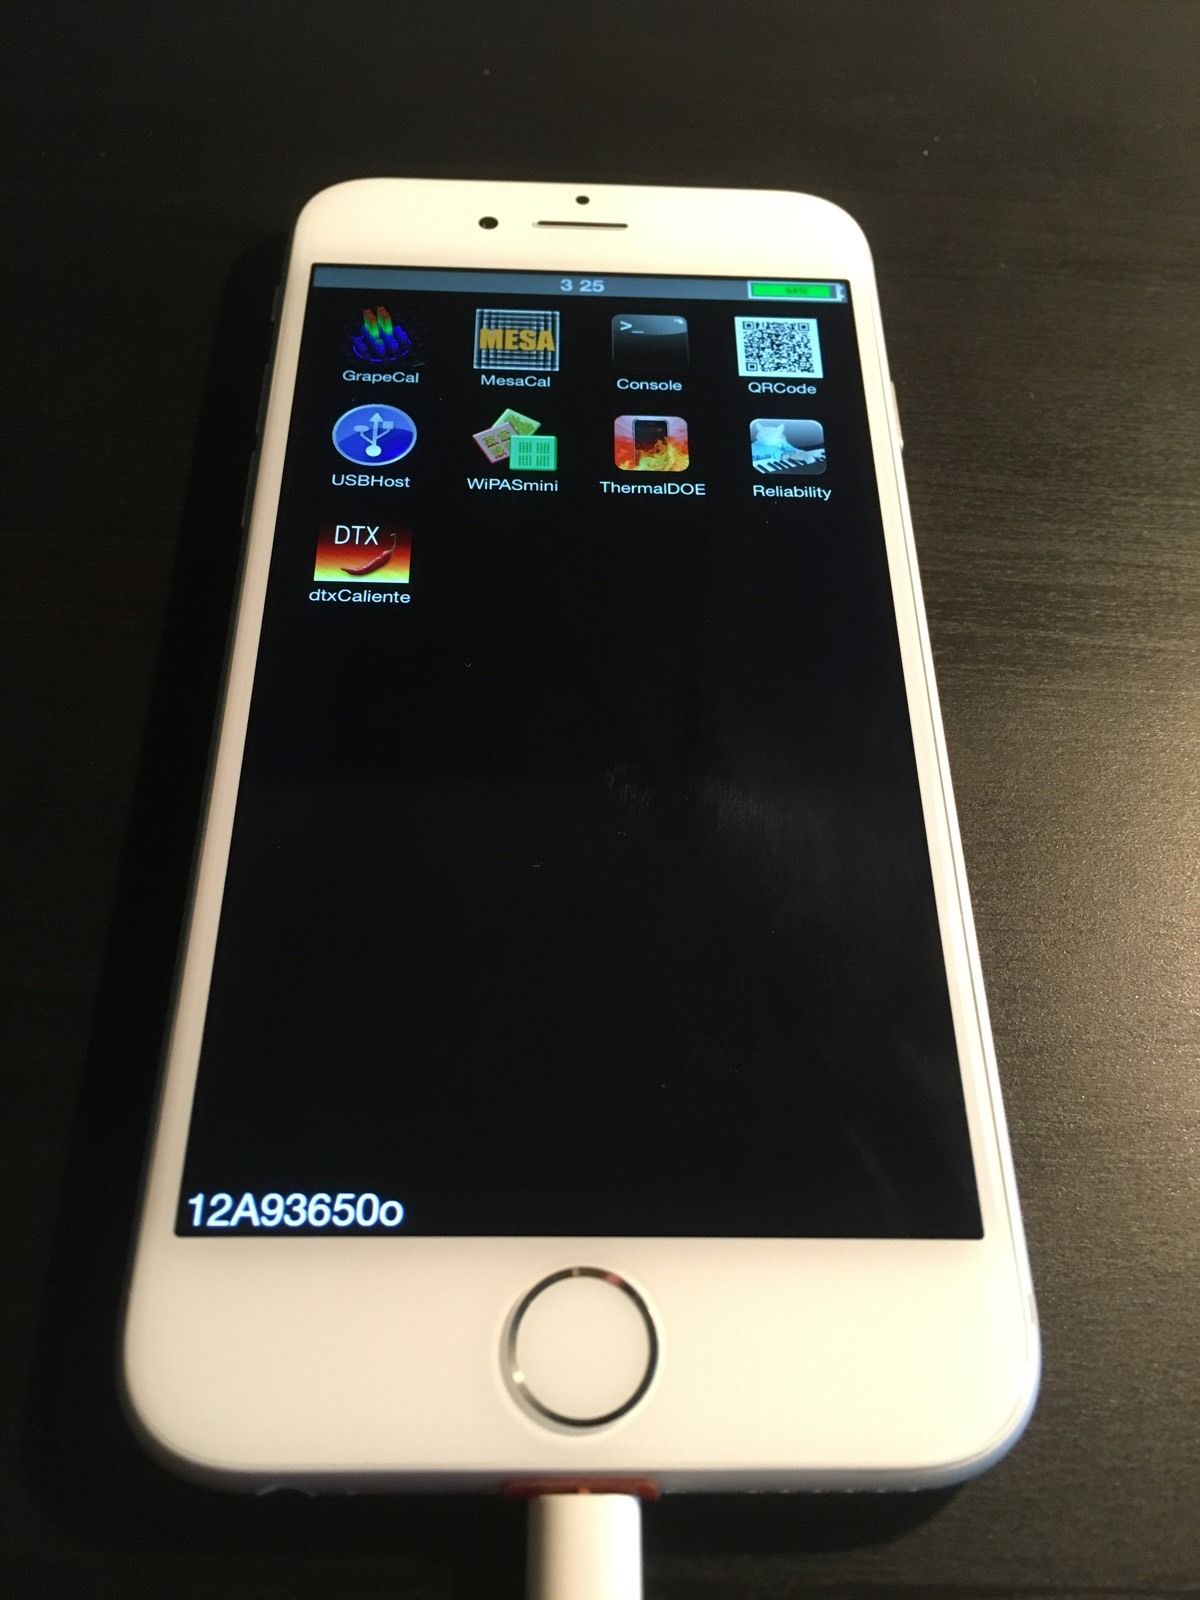 iPhone 6 prototype